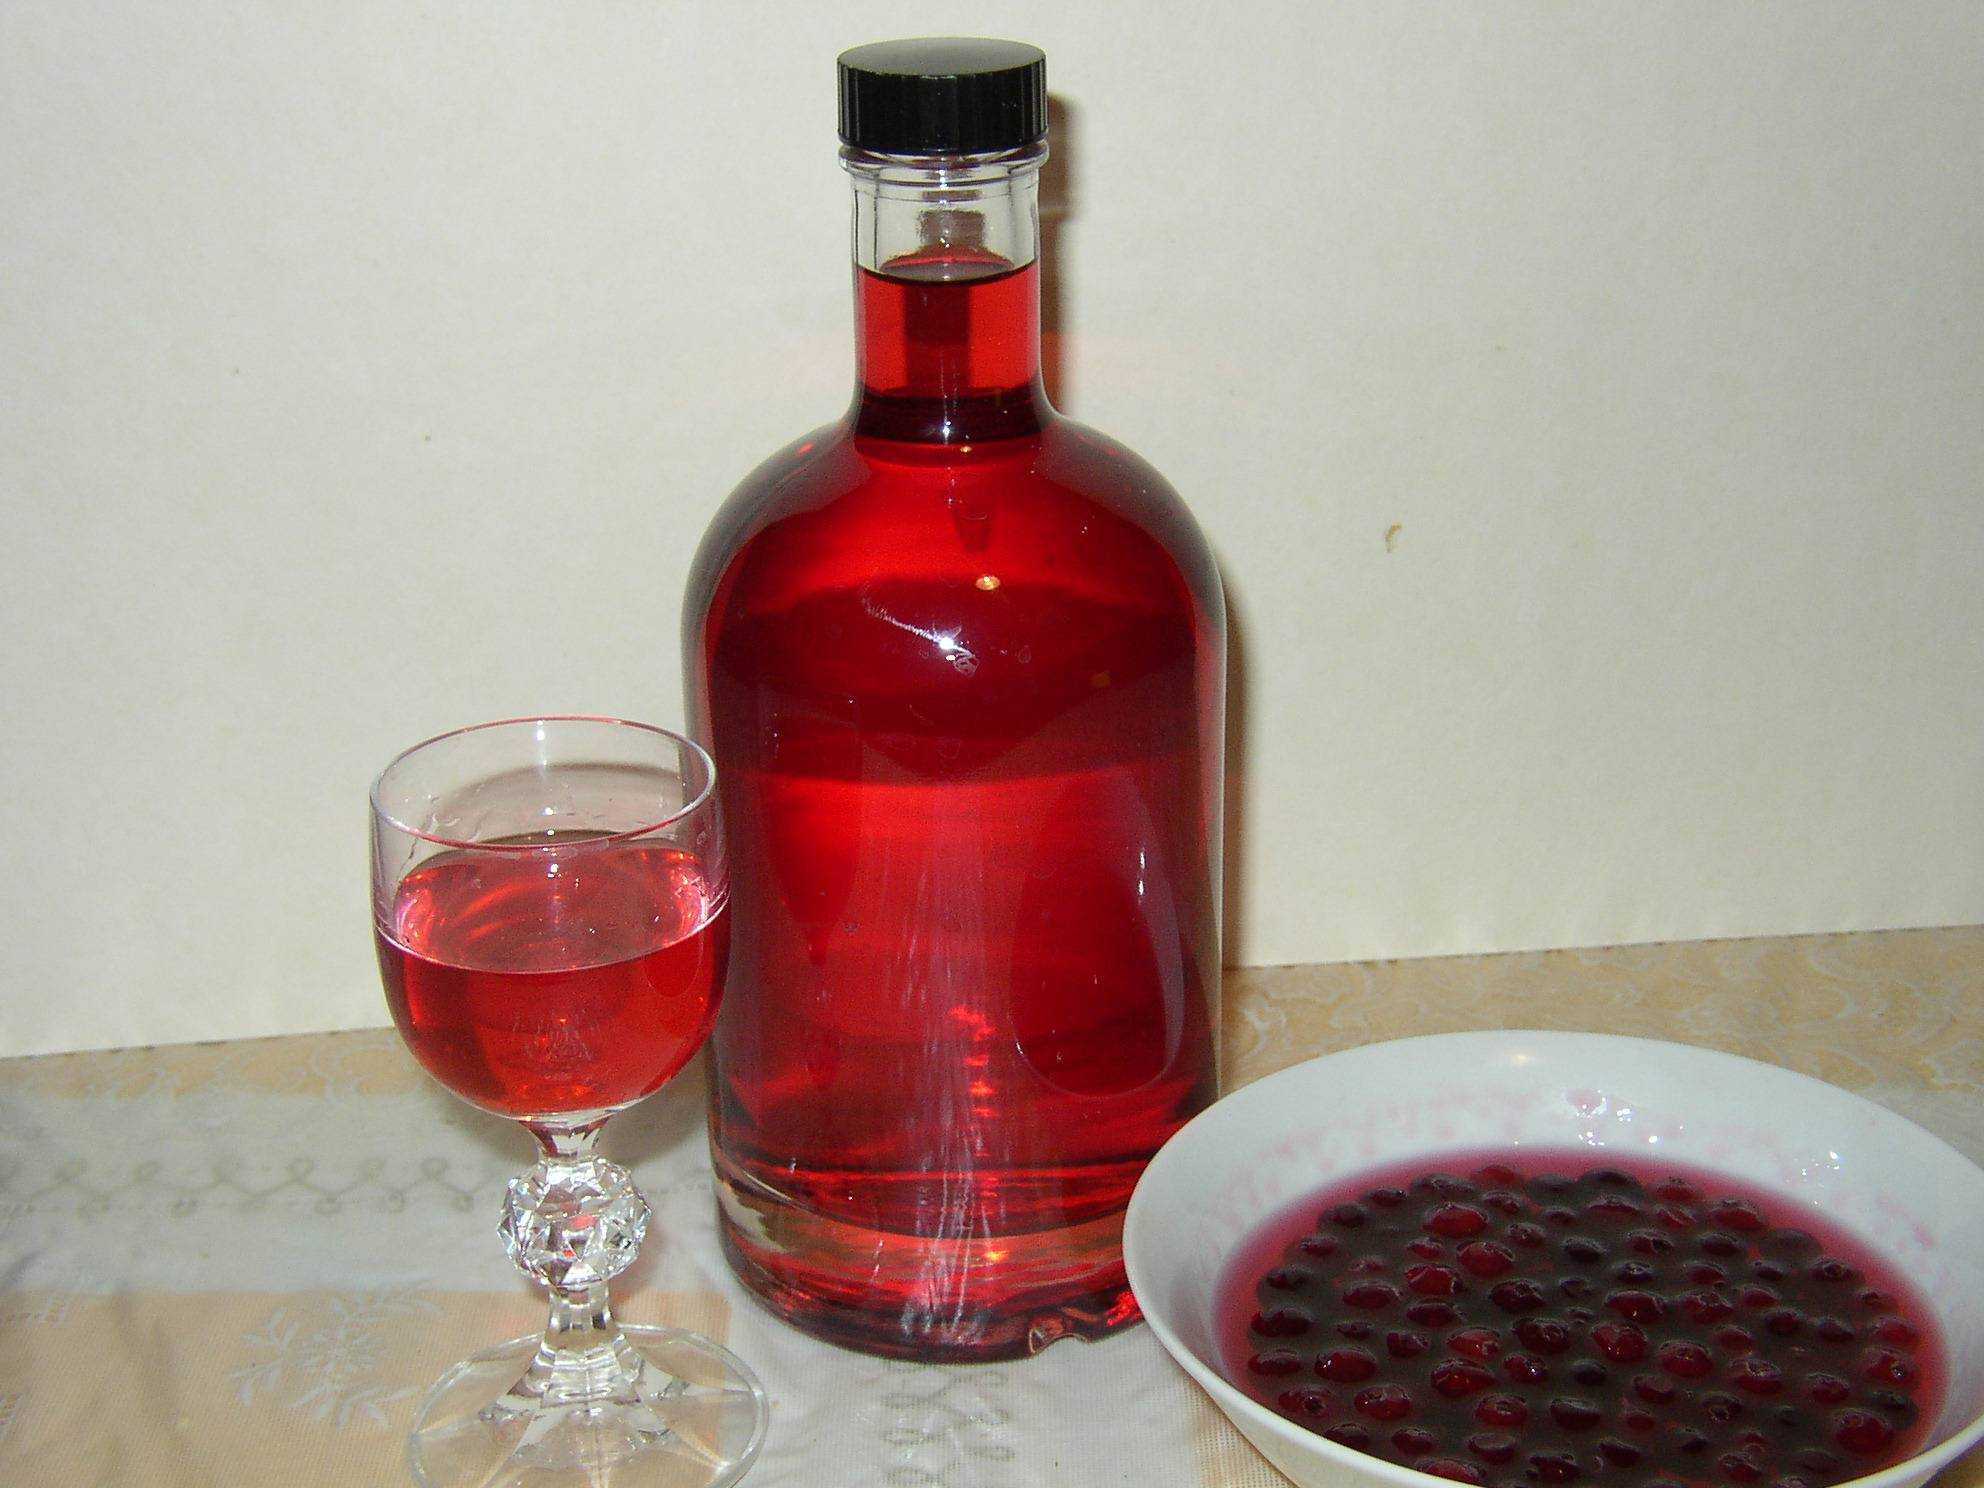 Настойка из красной смородины на водке (спирту, самогоне) в домашних условиях по простому рецепту ⋆ алкомен.ру-домашний алкоголь рецепт самогон,брага,вино